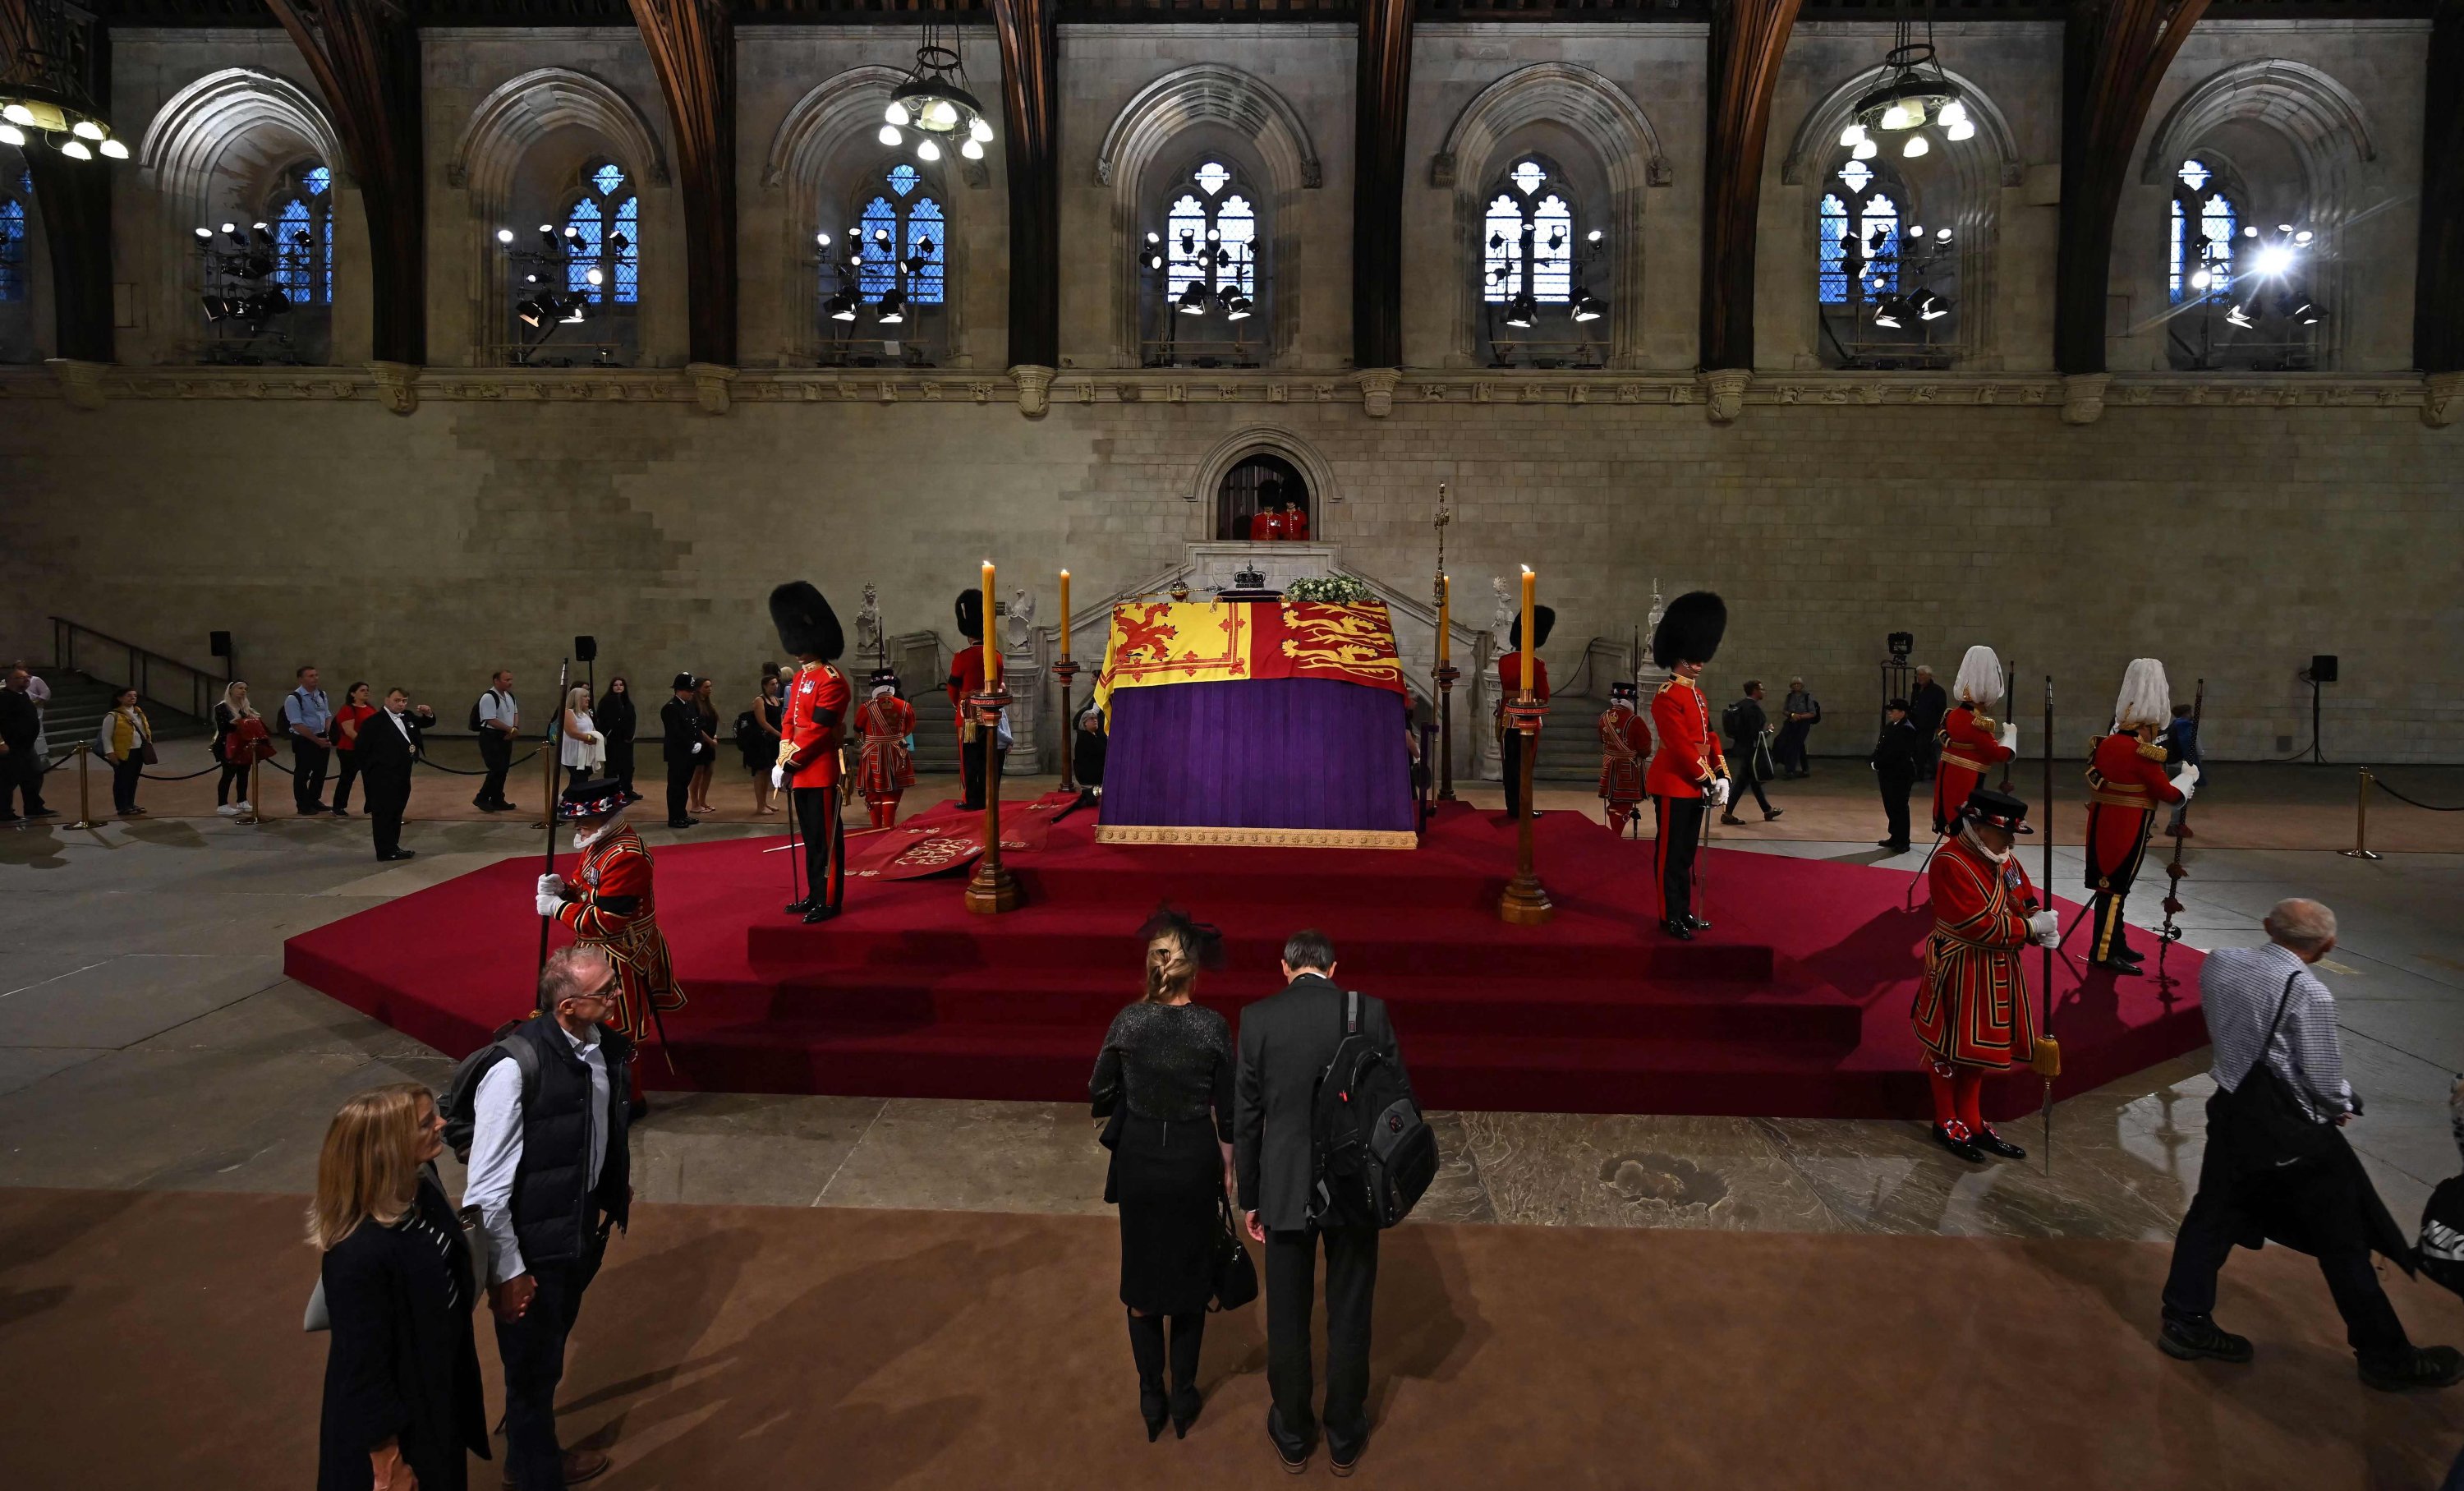 Anggota arsip publik melewati peti mati Ratu Elizabeth II, di dalam Westminster Hall, di Istana Westminster, di London, Inggris, 14 September 2022. (AFP Photo)